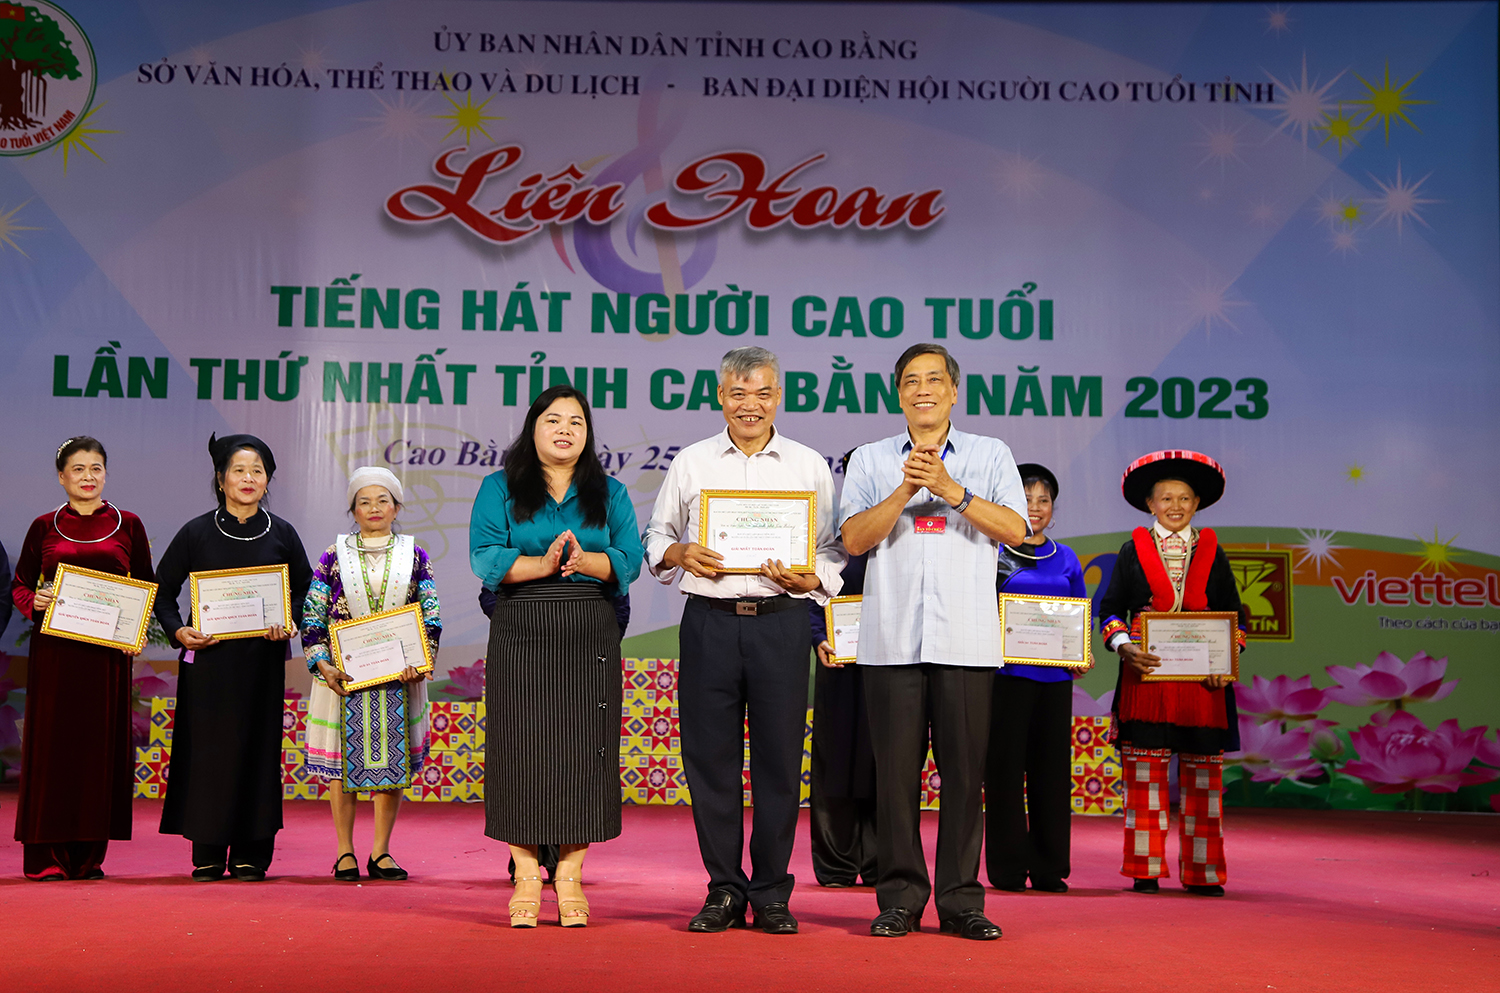 Liên hoan Tiếng hát người cao tuổi lần thứ Nhất tỉnh Cao Bằng năm 2023